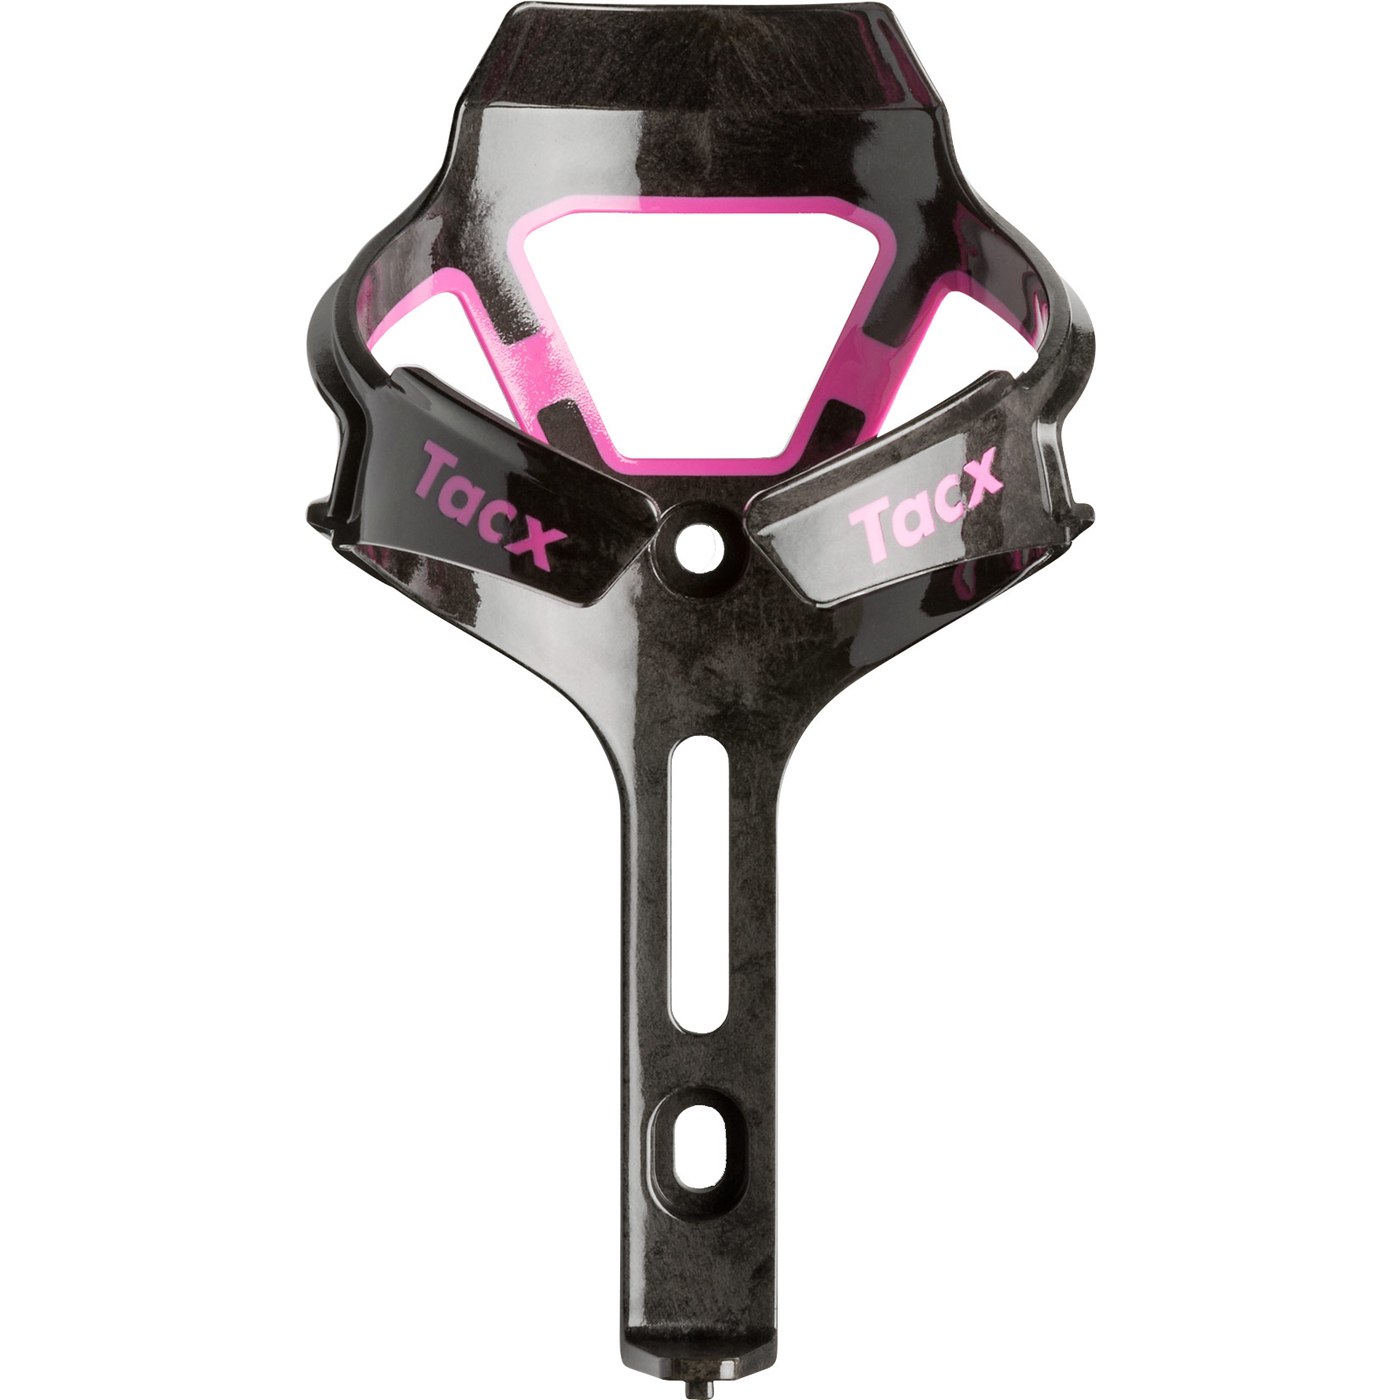 Produktbild von Garmin Tacx Ciro Flaschenhalter - pink T-6500.16